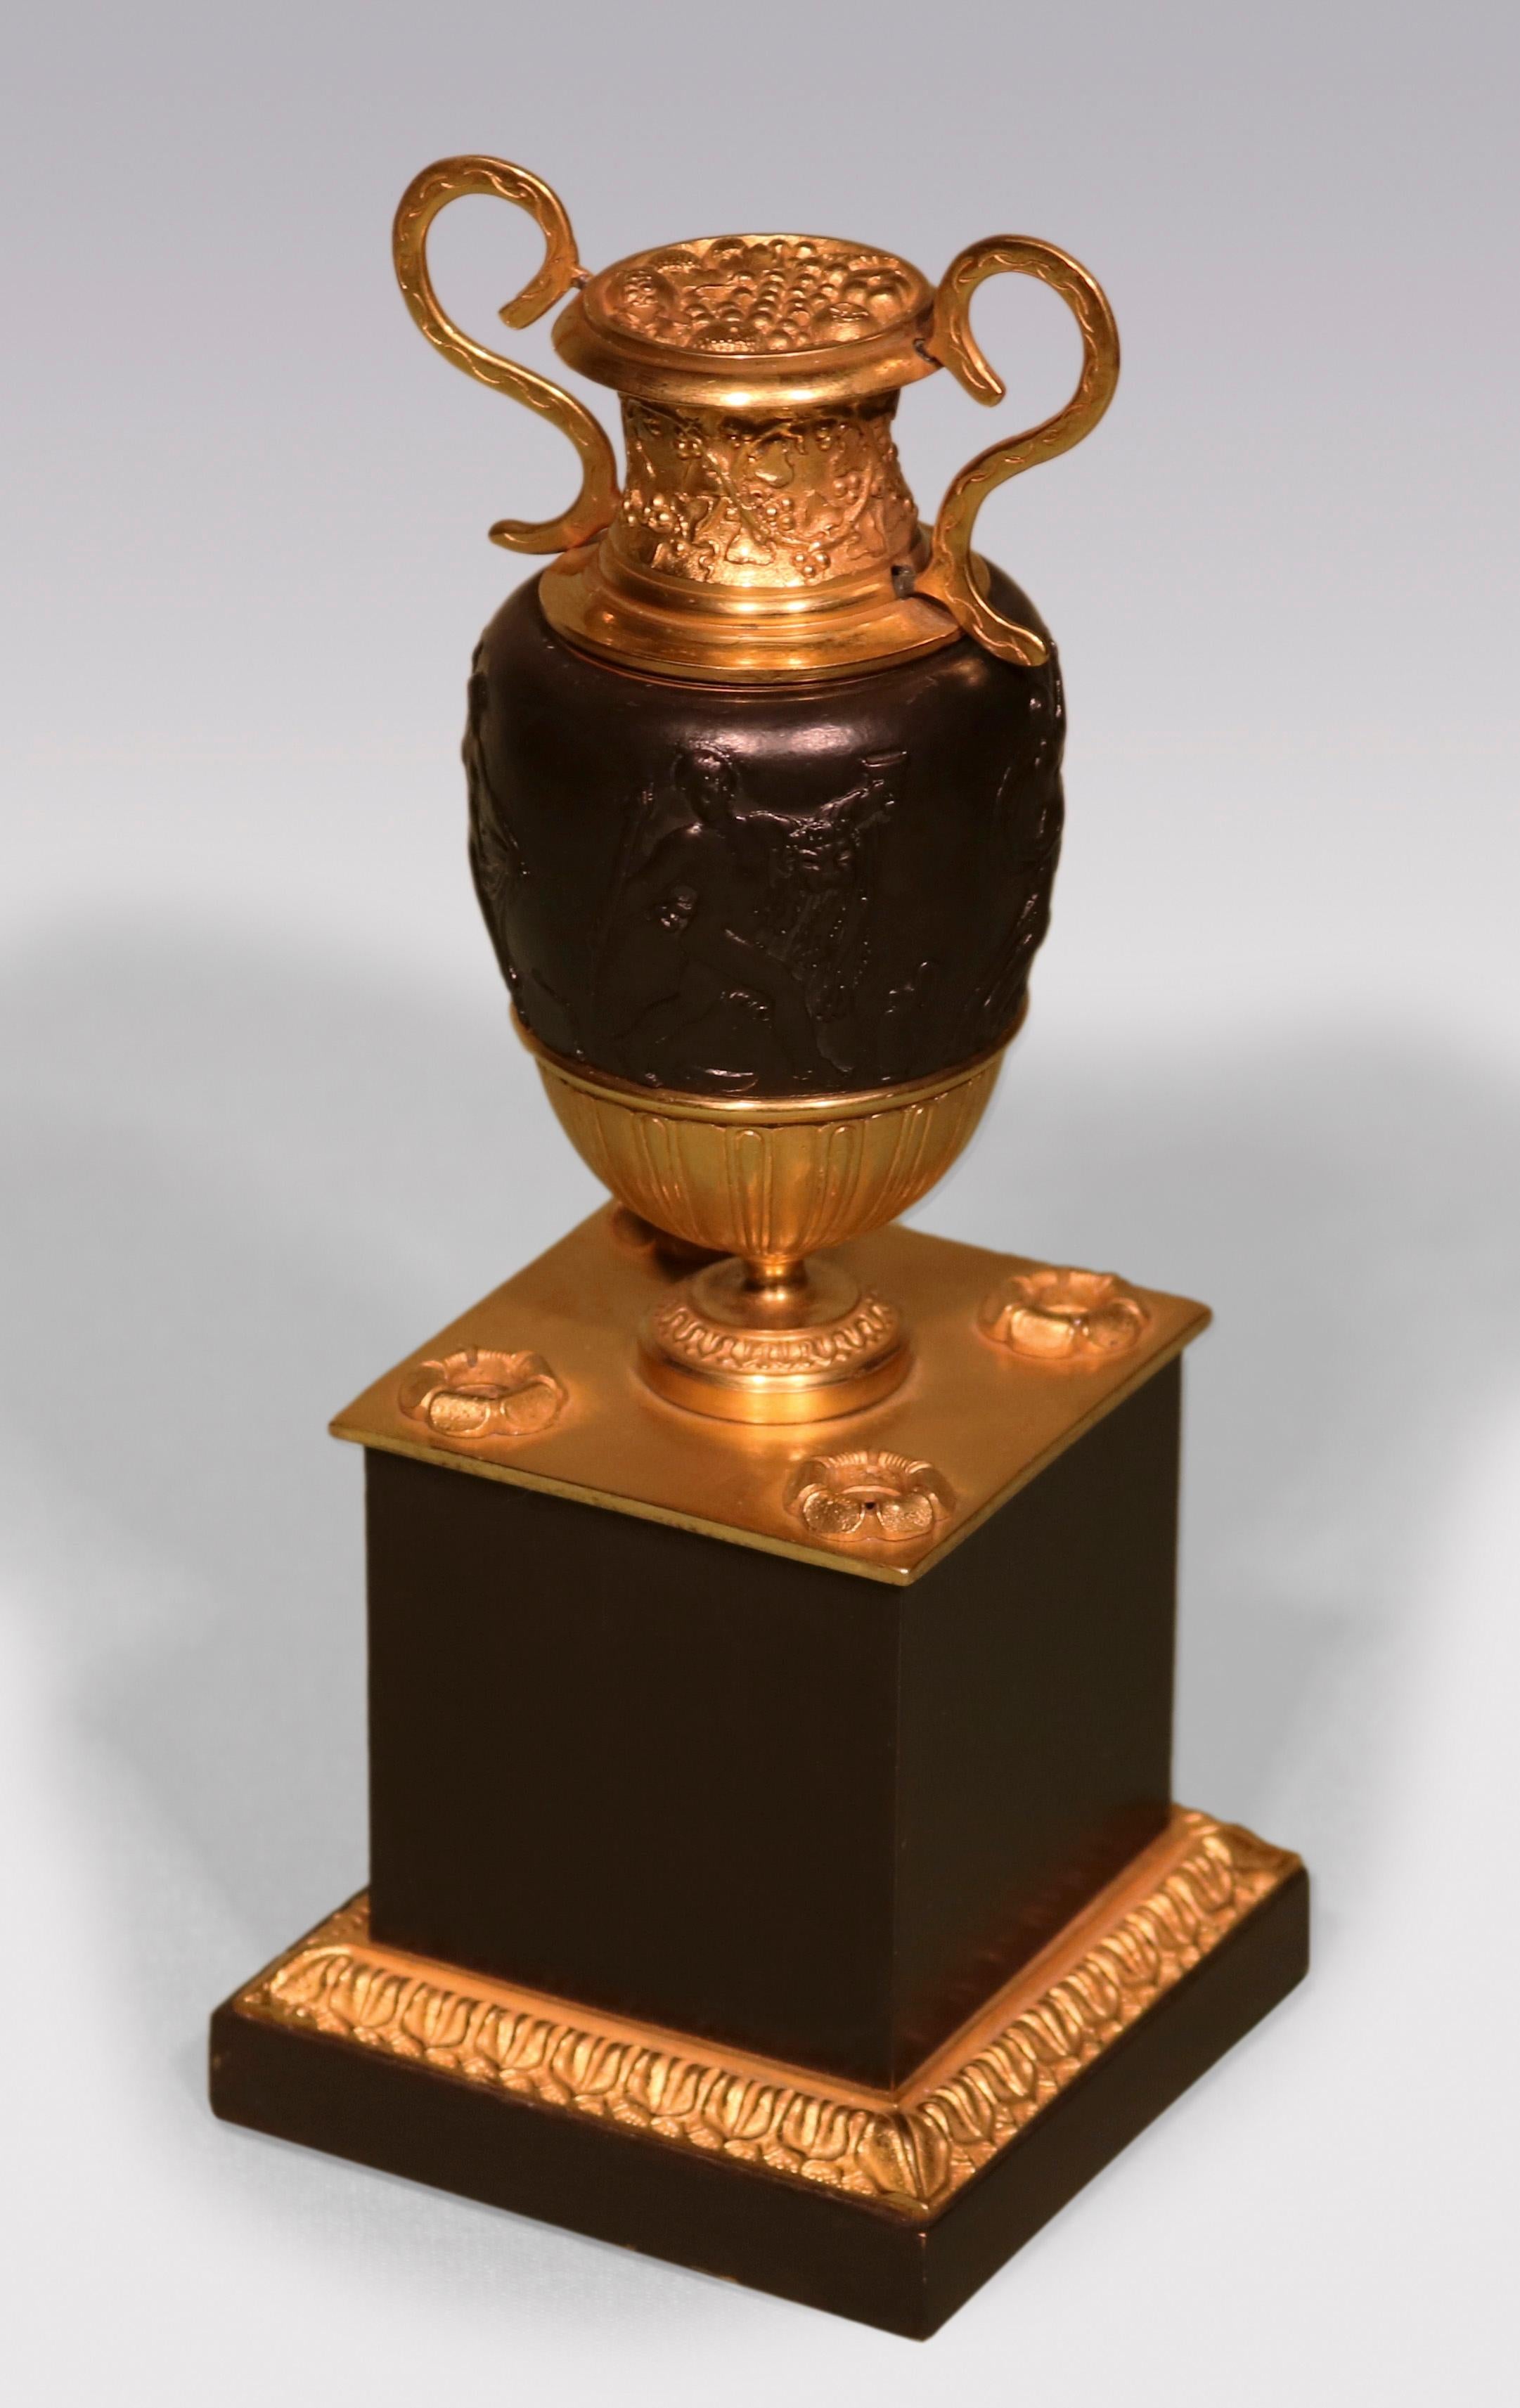 Ein ungewöhnlicher Federhalter aus Bronze und Ormolu aus dem frühen 19. Jahrhundert, überragt von 